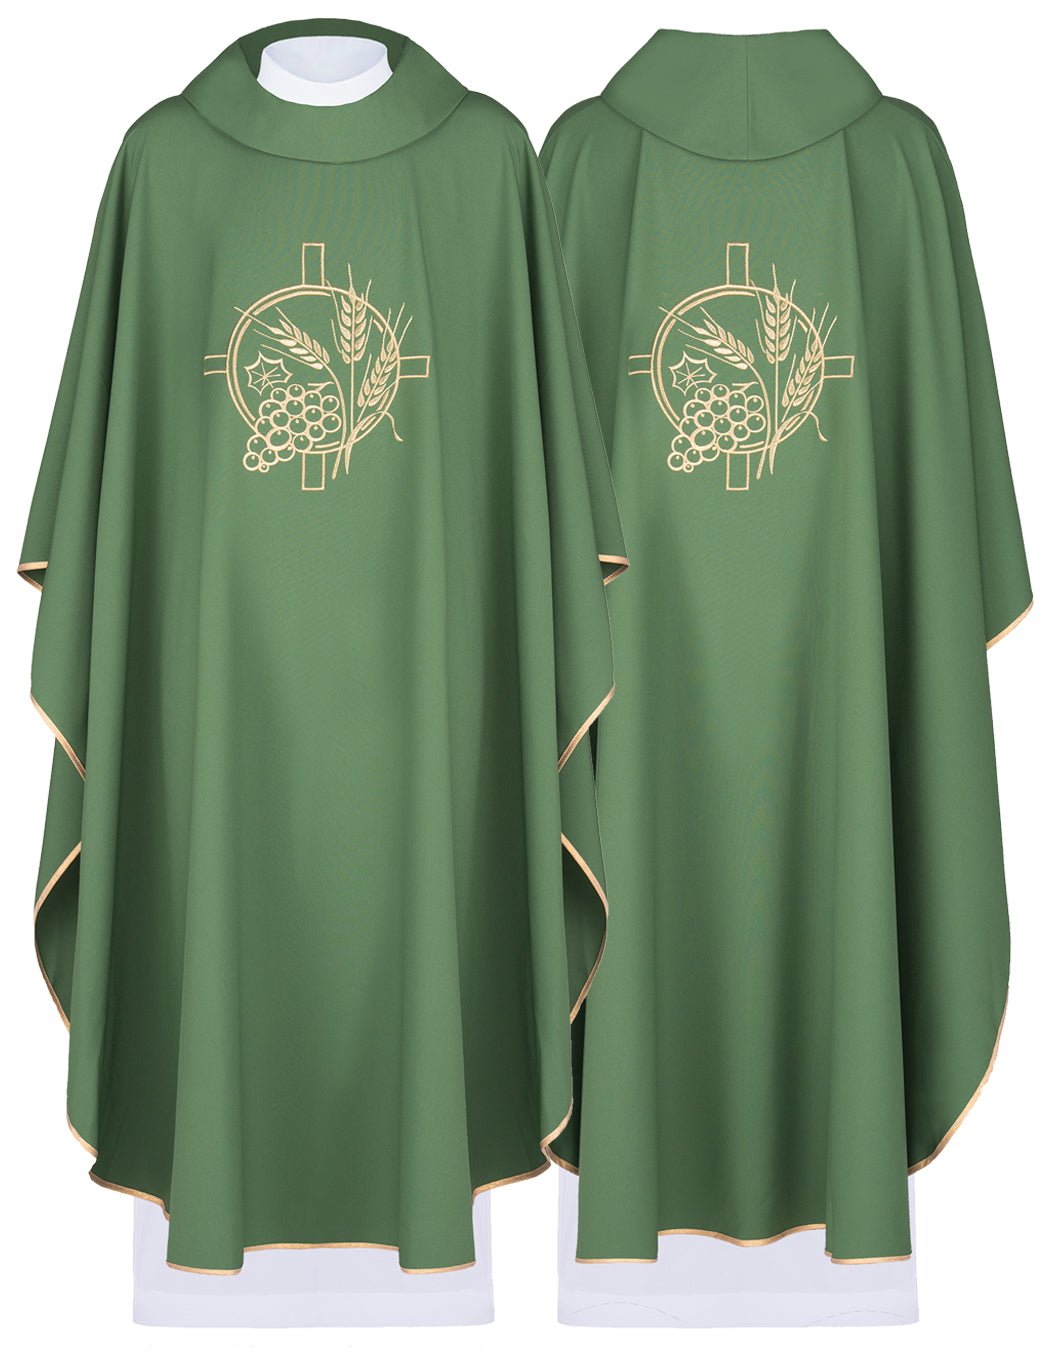 Zielony ornat z eucharystycznym wzorem